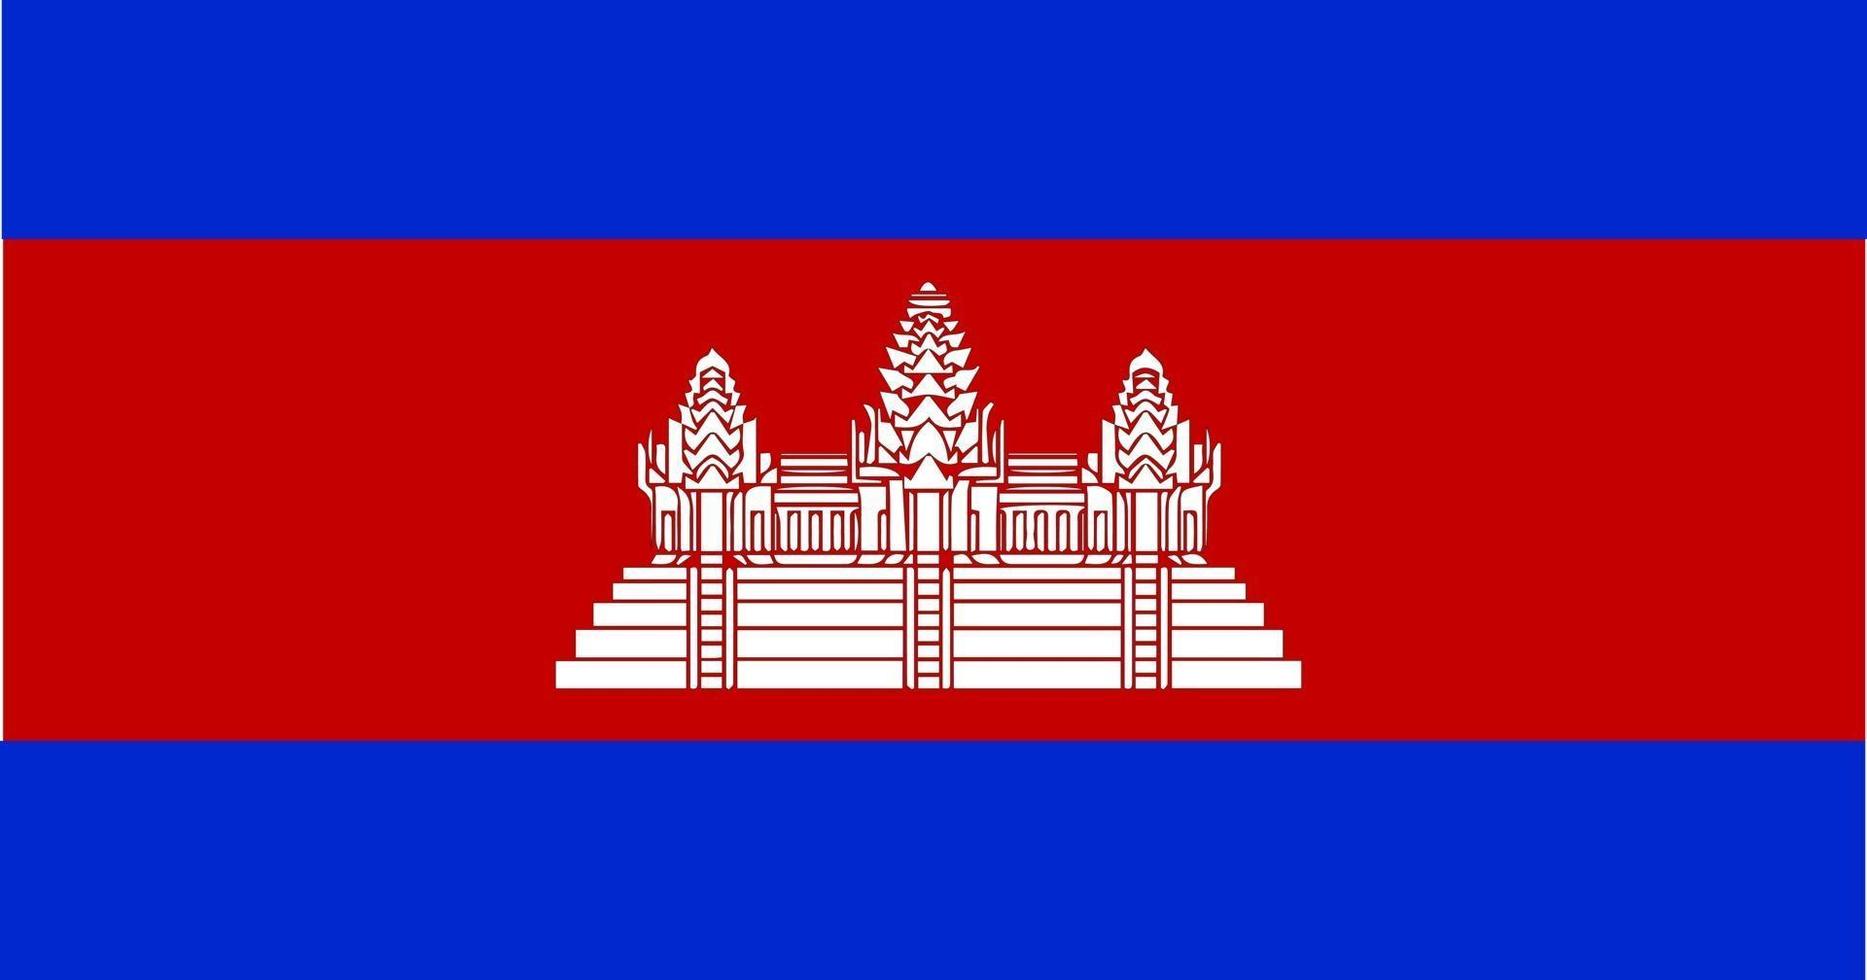 vettore di bandiera della cambogia - bandiera ufficiale della cambogia con proporzioni di colore e dimensioni originali